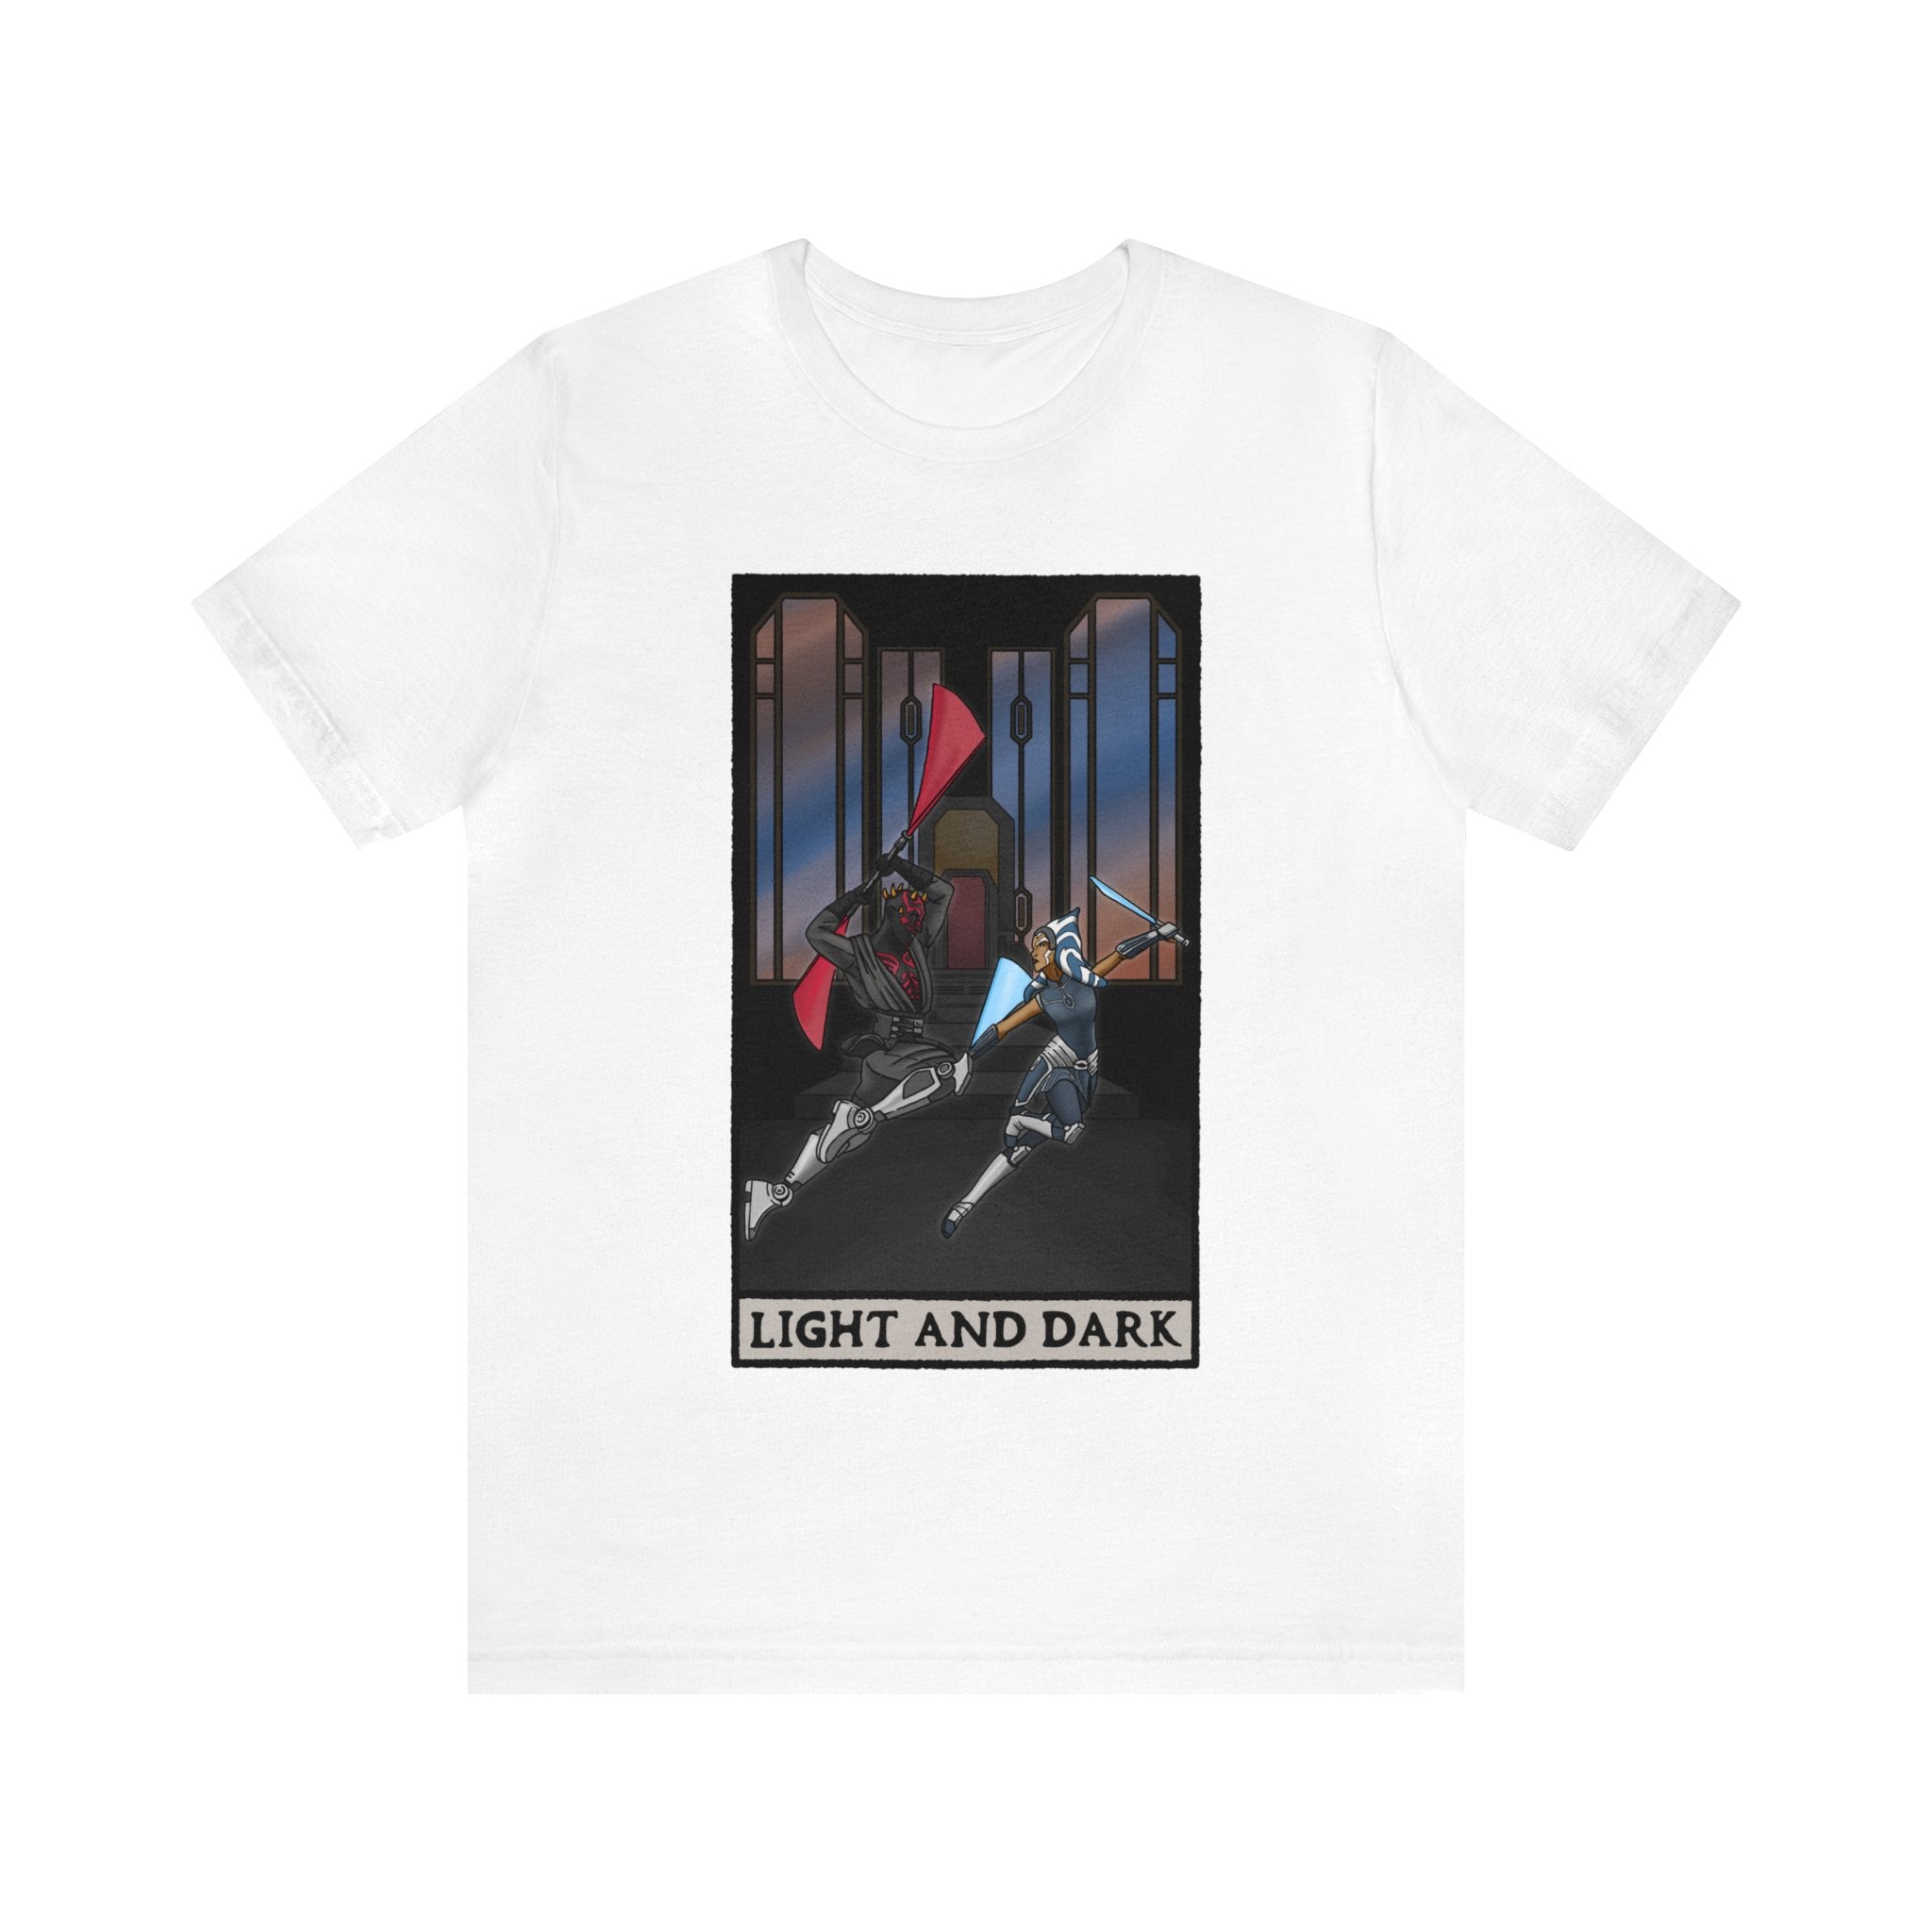 Ahsoka & Maul "Light and Dark" Tarot Card (T-shirt)